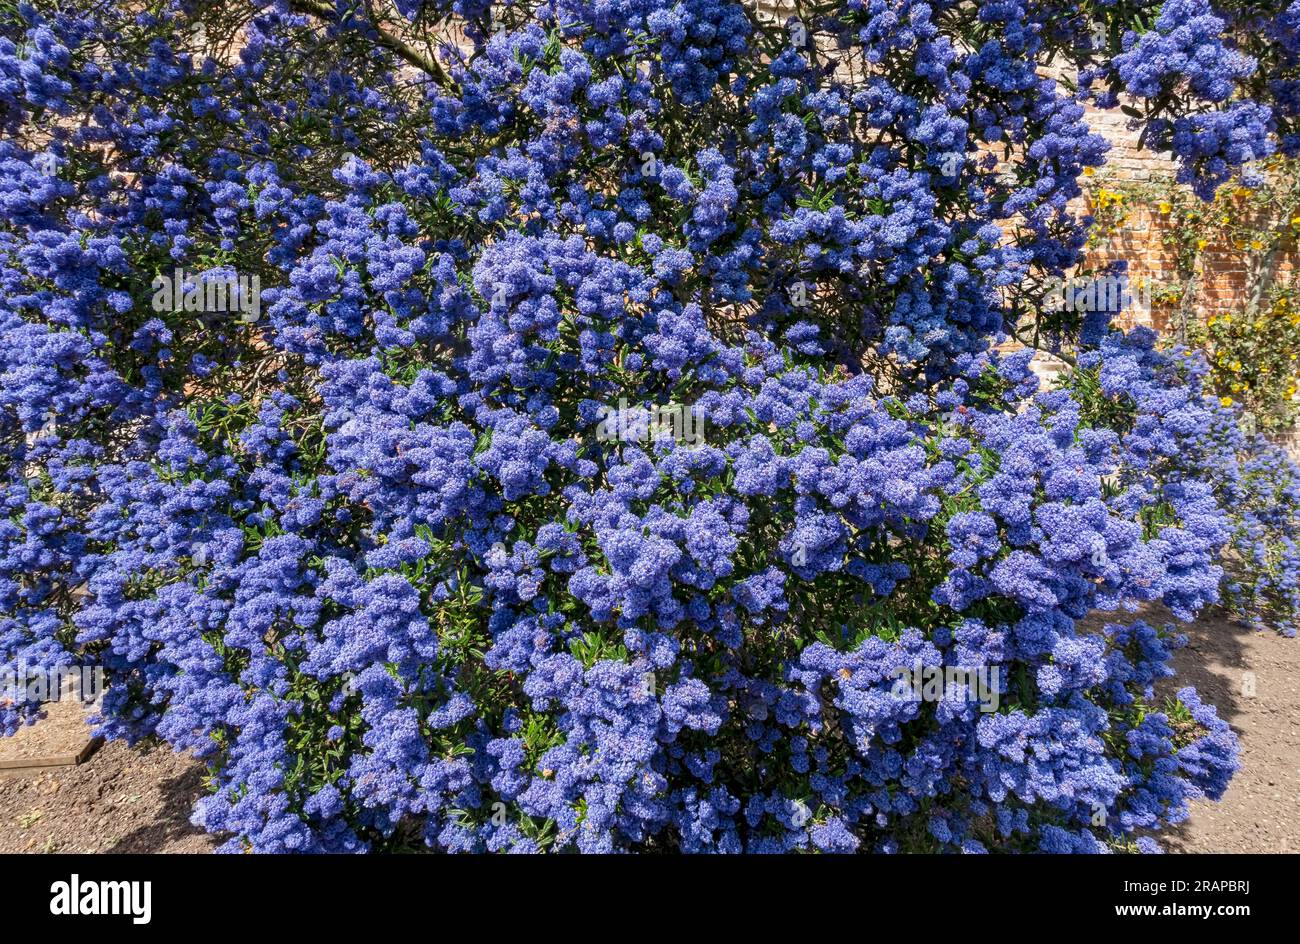 Arbusto fiori blu immagini e fotografie stock ad alta risoluzione - Alamy